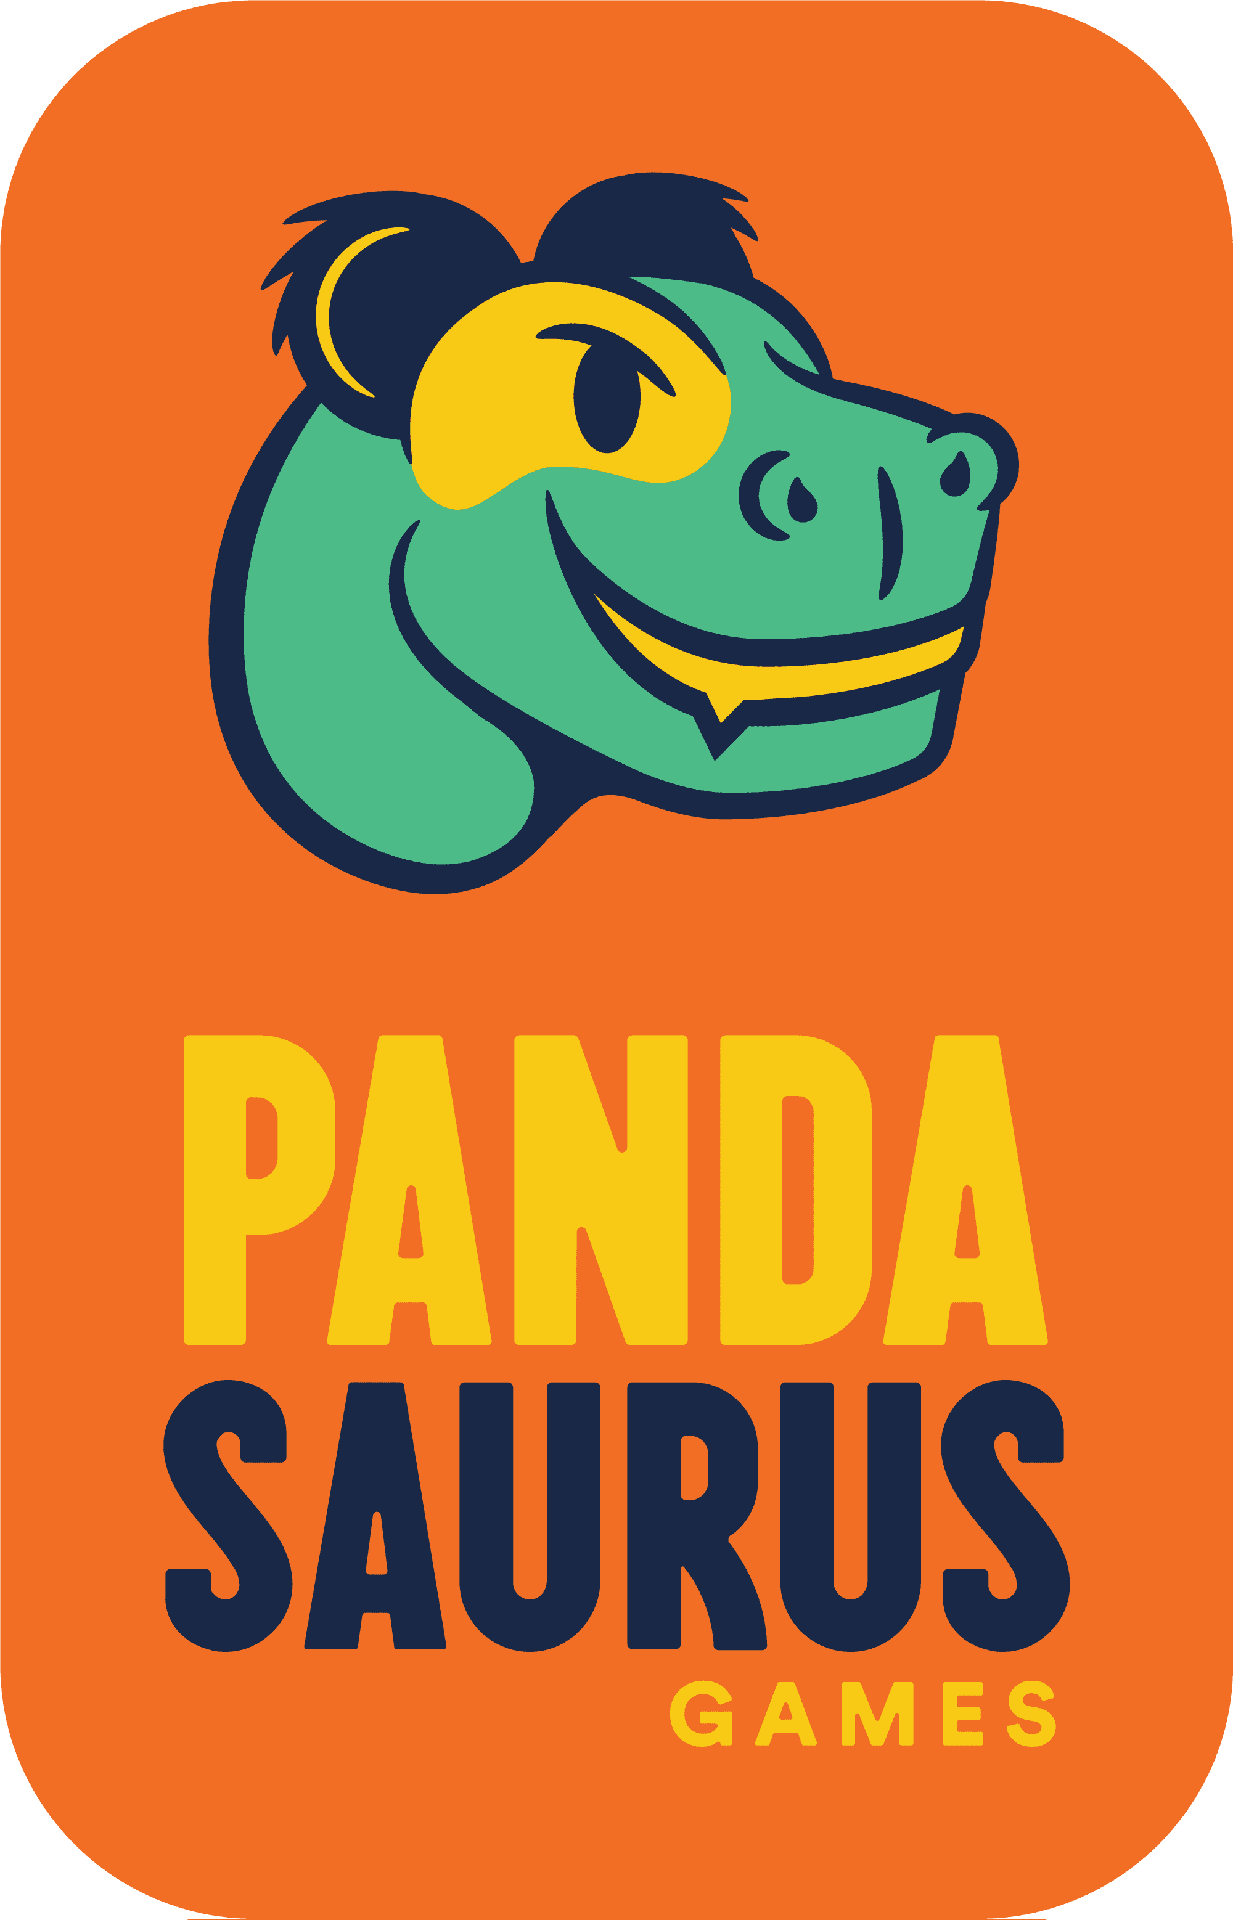 Brand: Pandasaurus Games